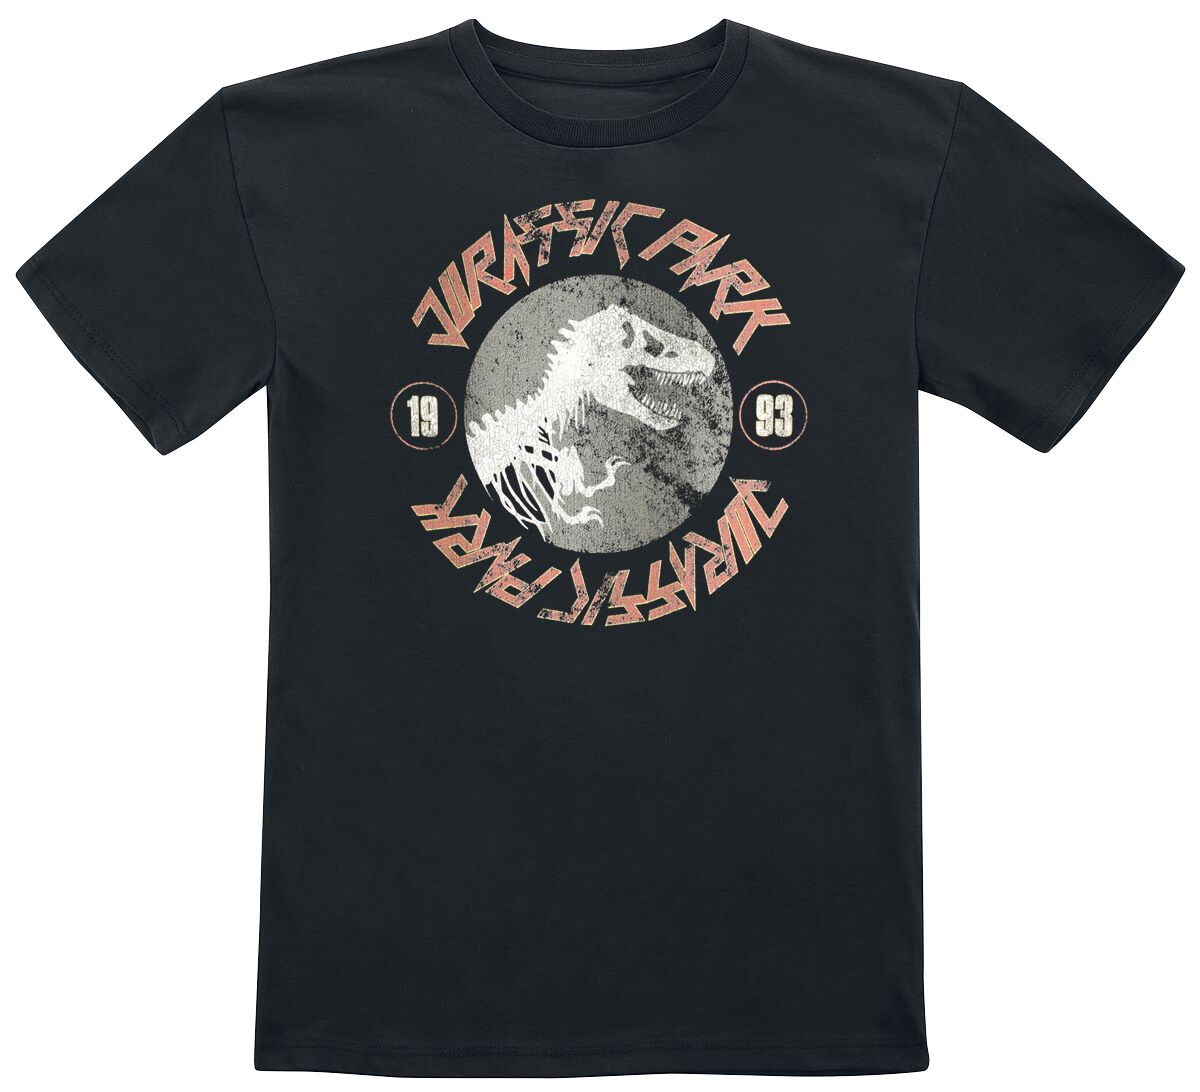 Jurassic Park T-Shirt für Kinder - Kids - 1993 - für Mädchen & Jungen - schwarz  - Lizenzierter Fanartikel